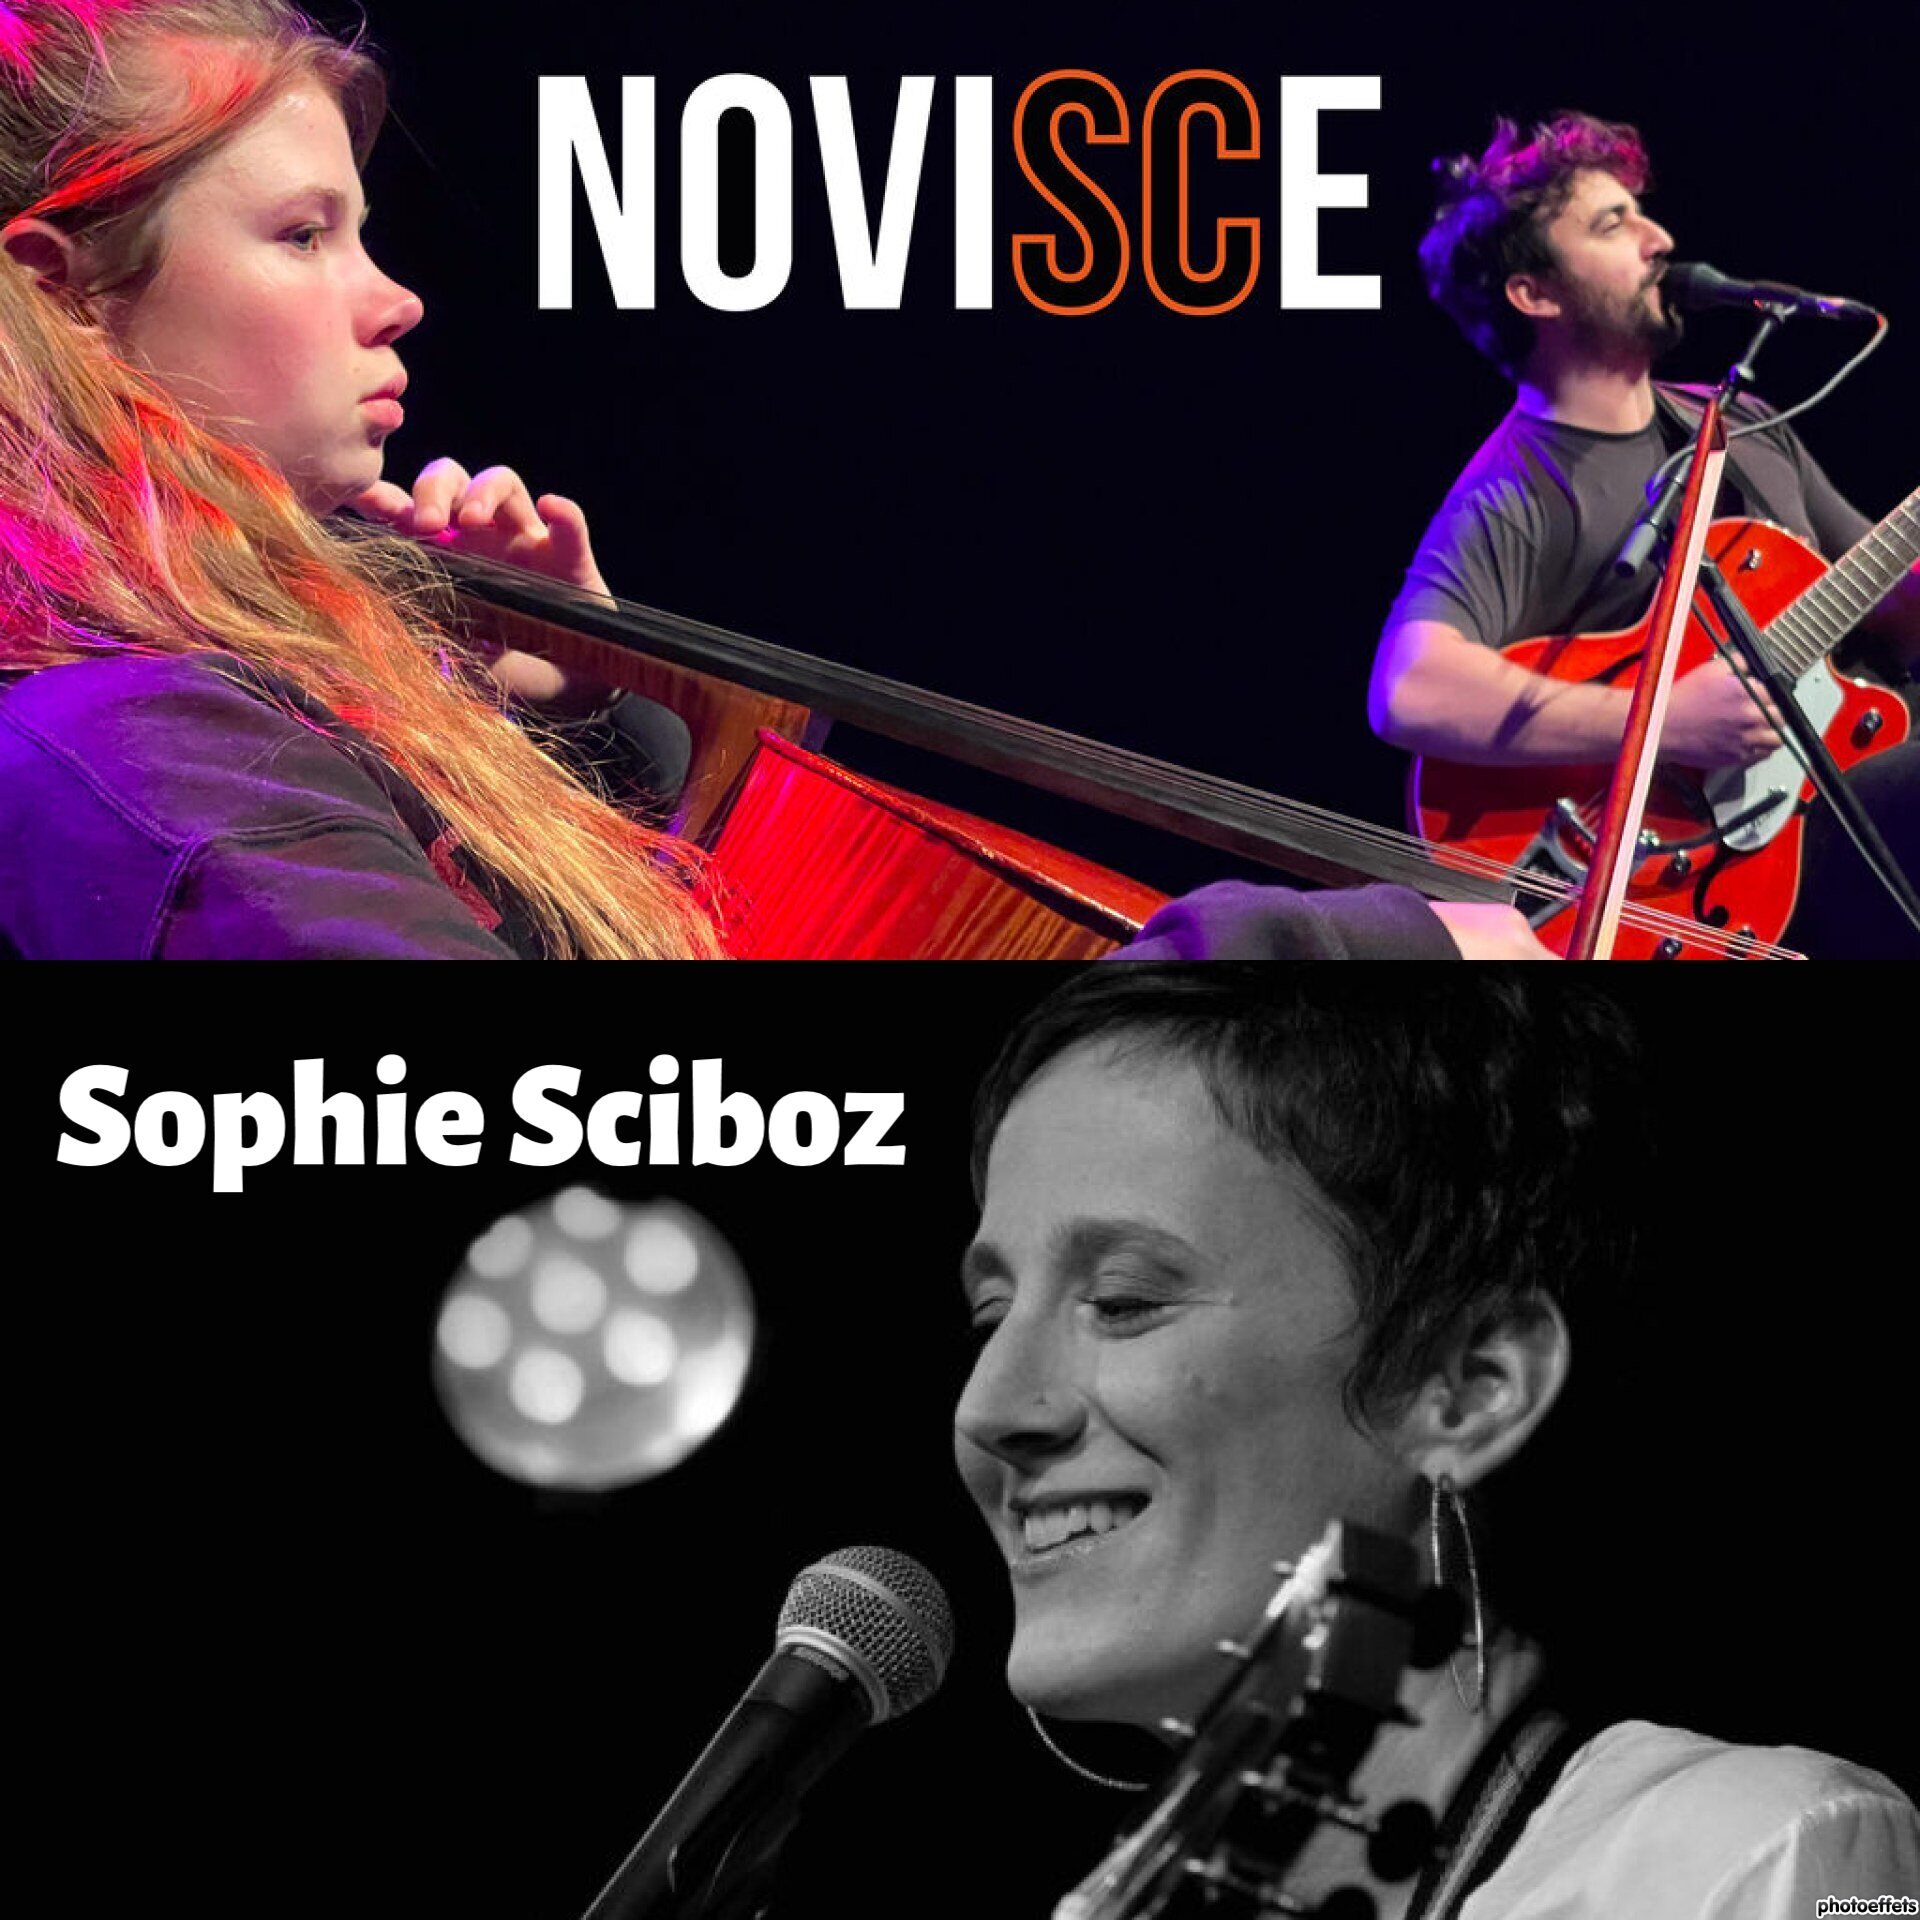 Soirée Chanson française - Deux concerts: Novisce - Sophie Sciboz